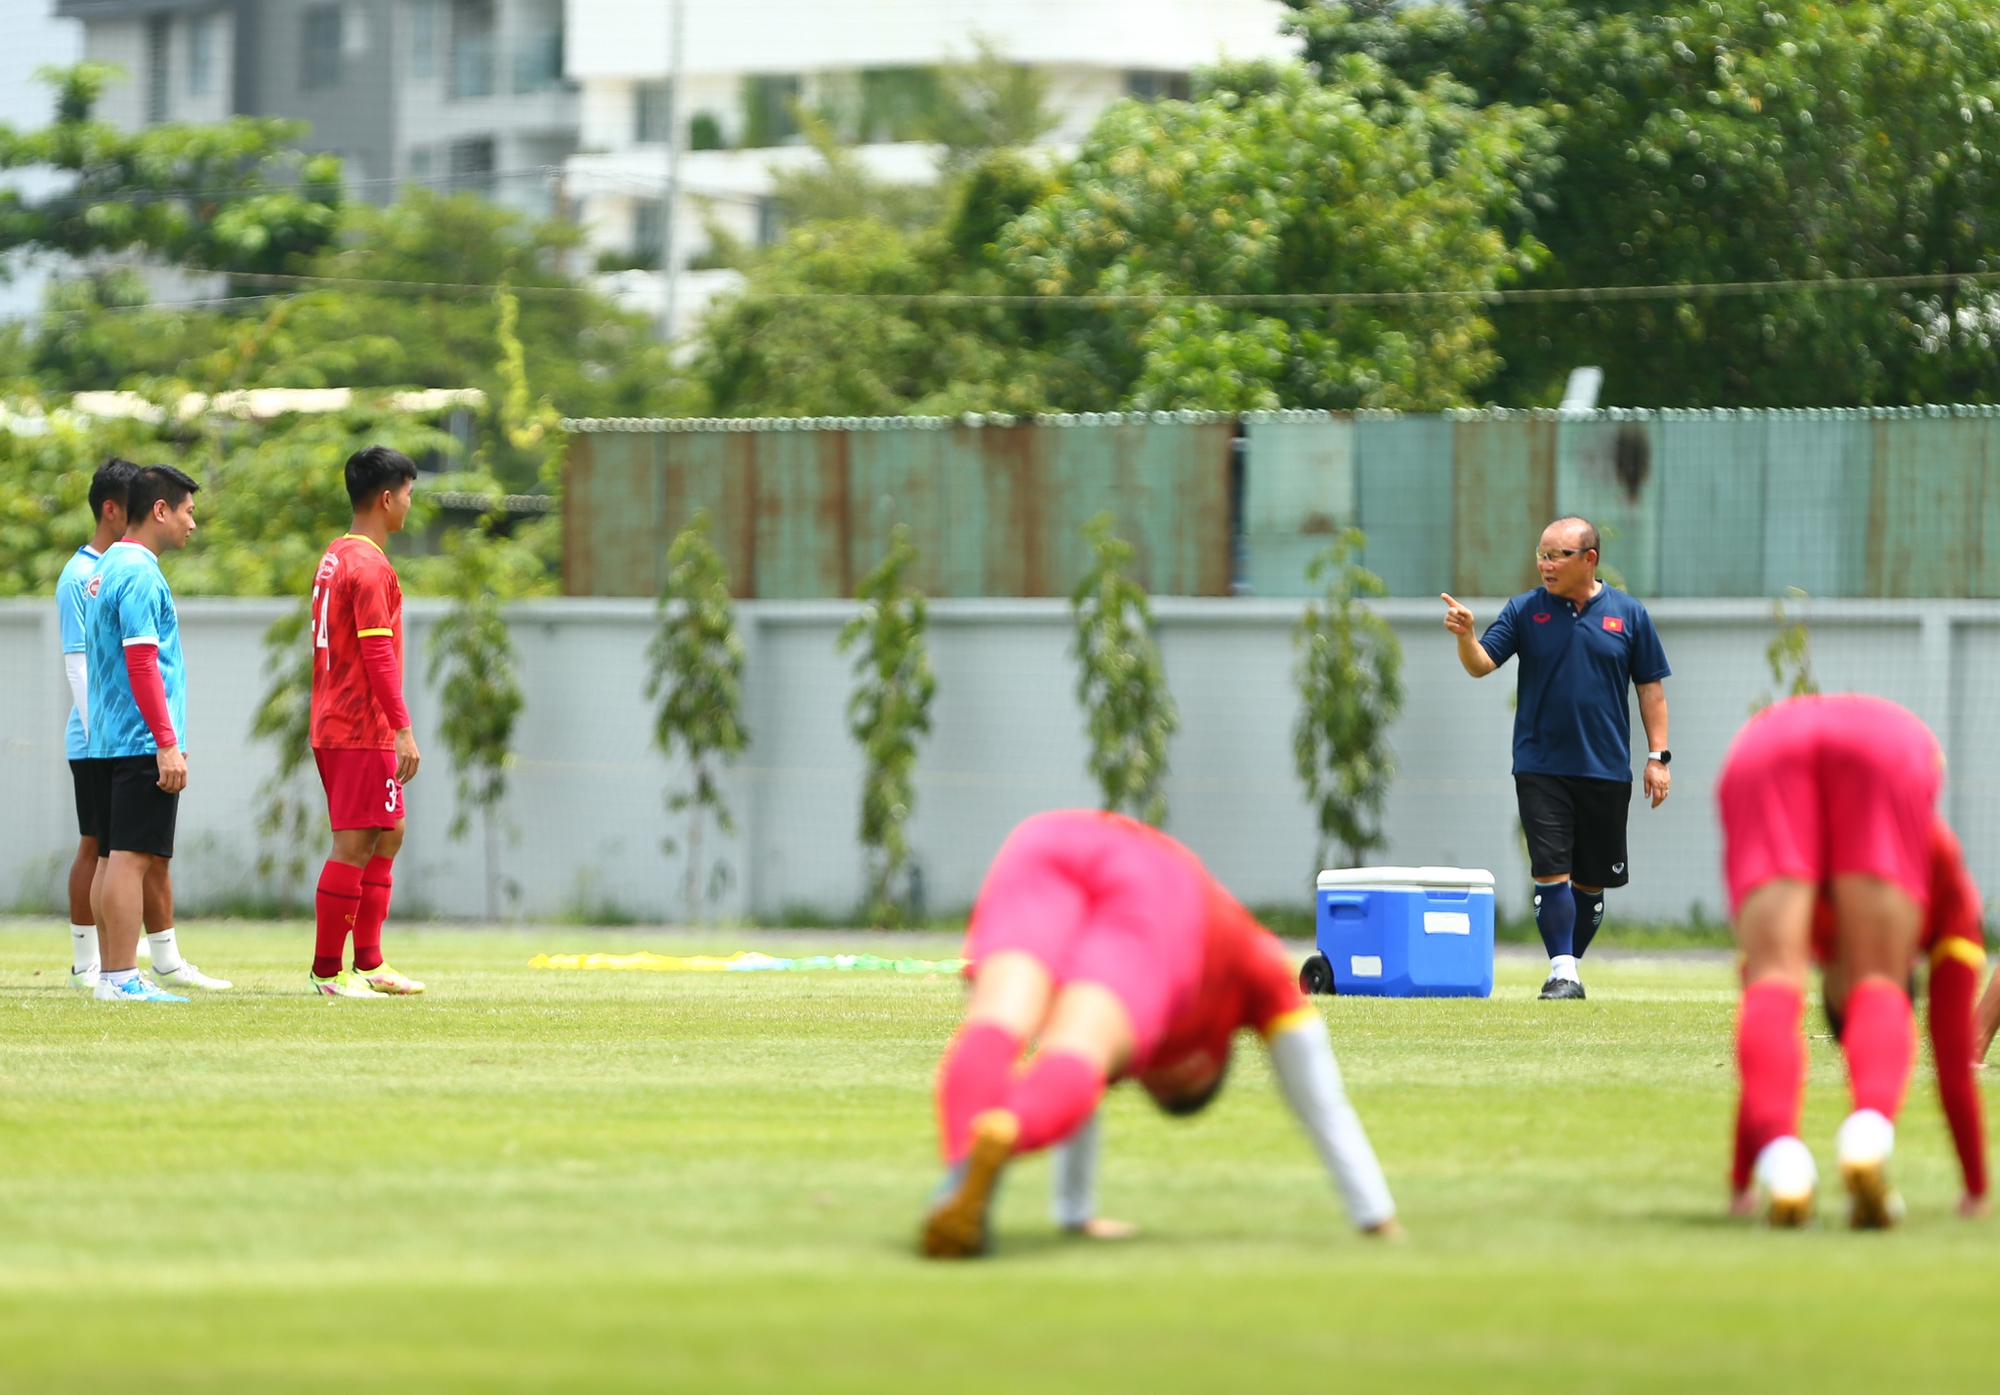 HLV Park Hang-seo giành 15 phút nhắc nhở cầu thủ trẻ - Ảnh 3.